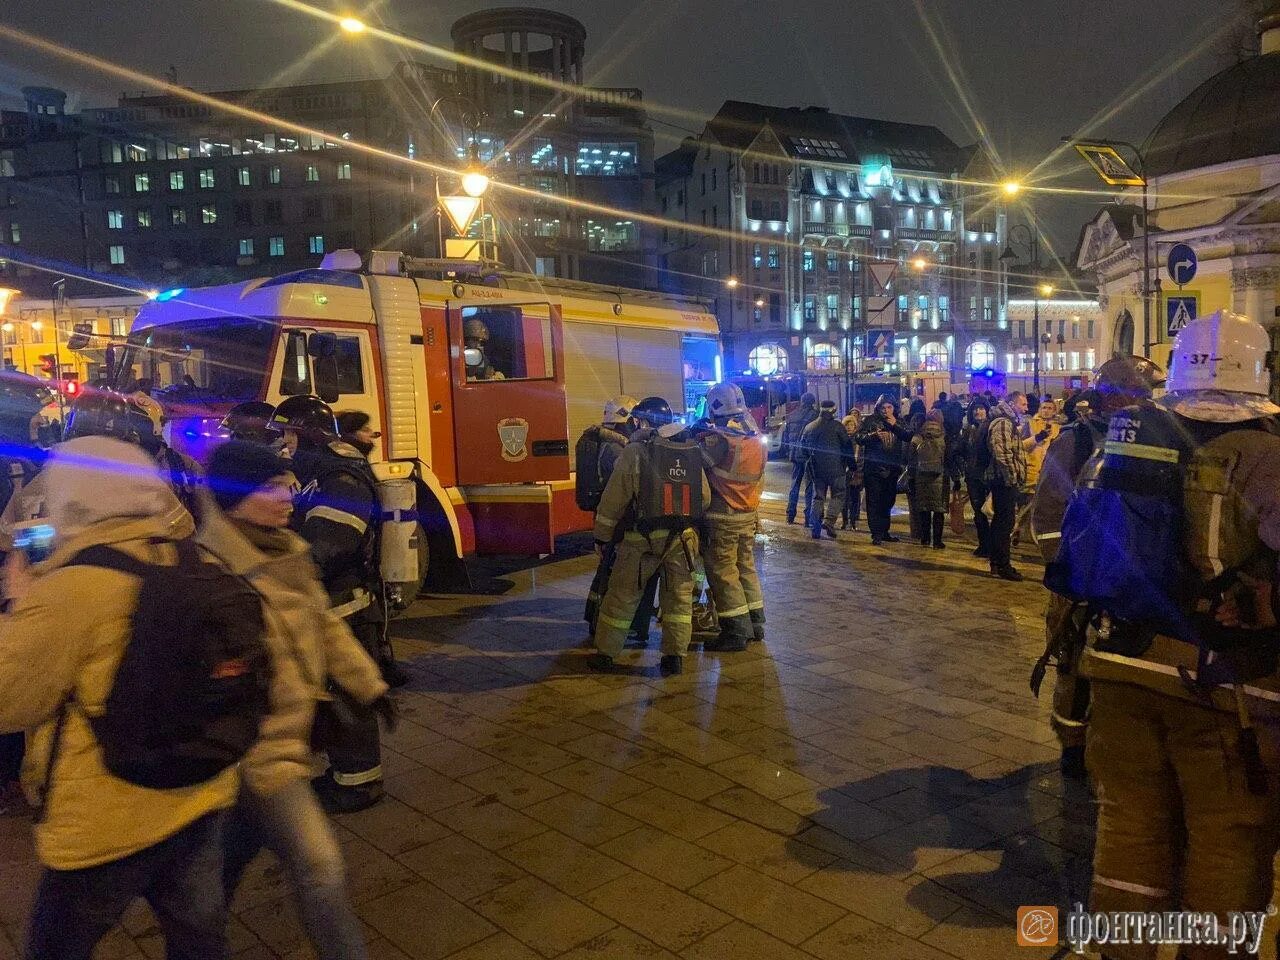 Авария в метро Санкт Петербург теракт. Происшествие в метро СПБ. Взрыв в Санкт-Петербурге сейчас.